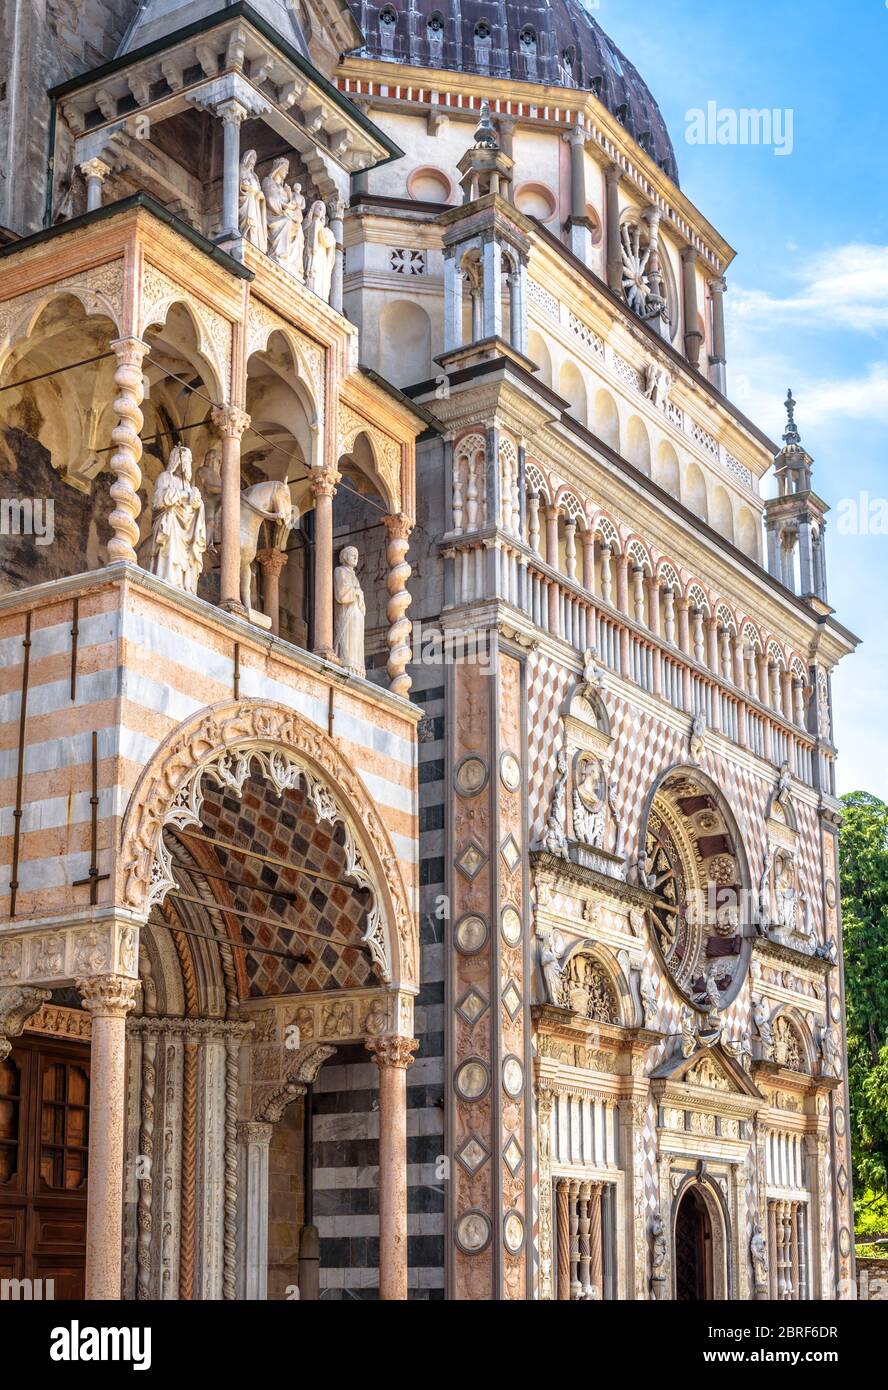 Basilica of Santa Maria Maggiore in Citta Alta of Bergamo, Italy. Ornate medieval church with luxury facade is a landmark of Bergamo. Historical archi Stock Photo